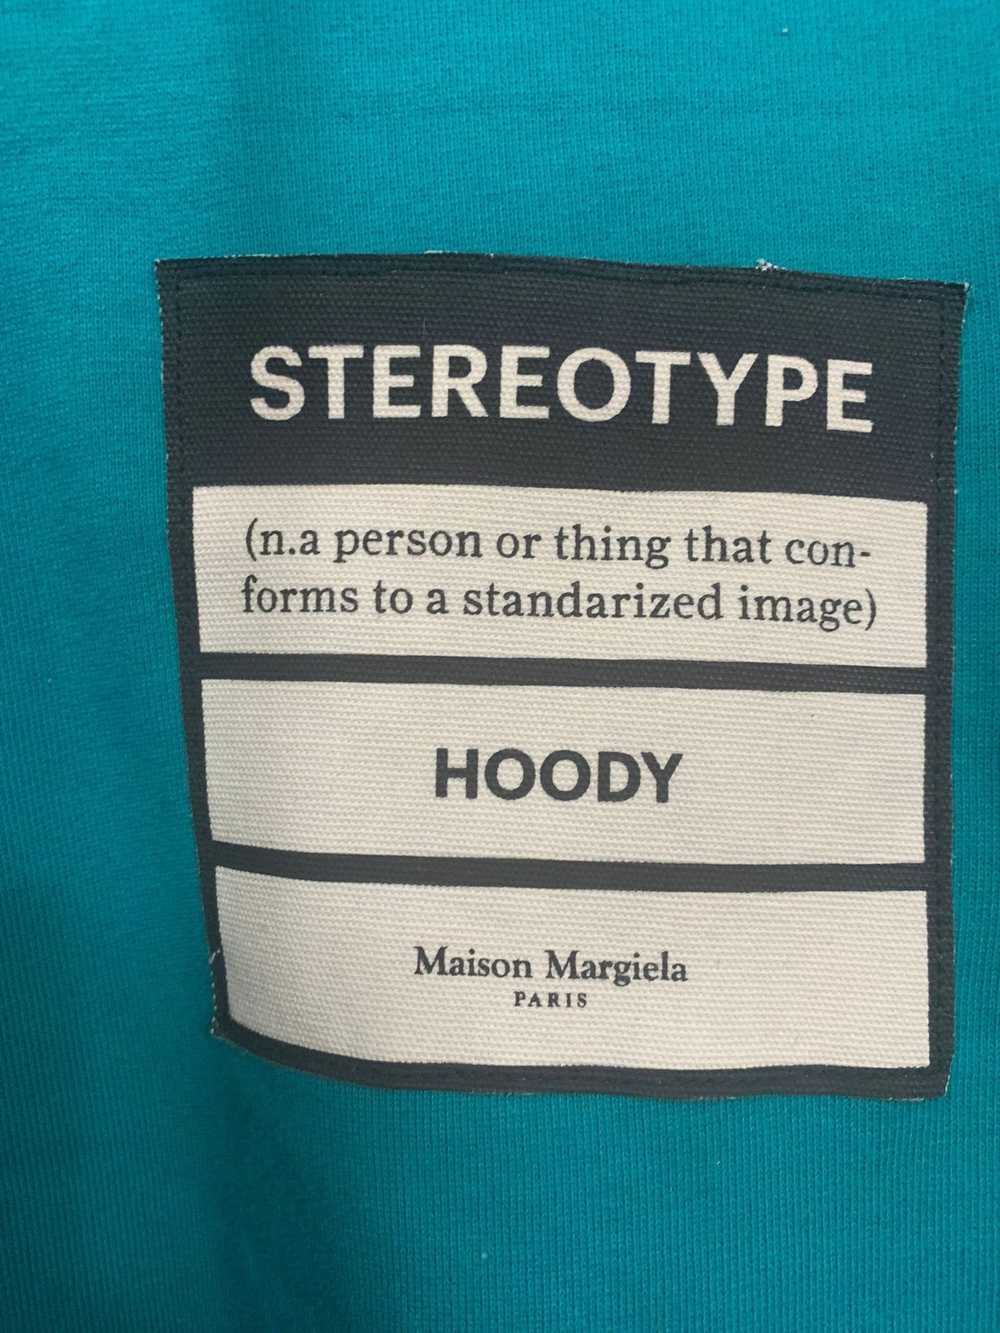 Maison Margiela Maison Margiela Stereotype hoodie - image 3